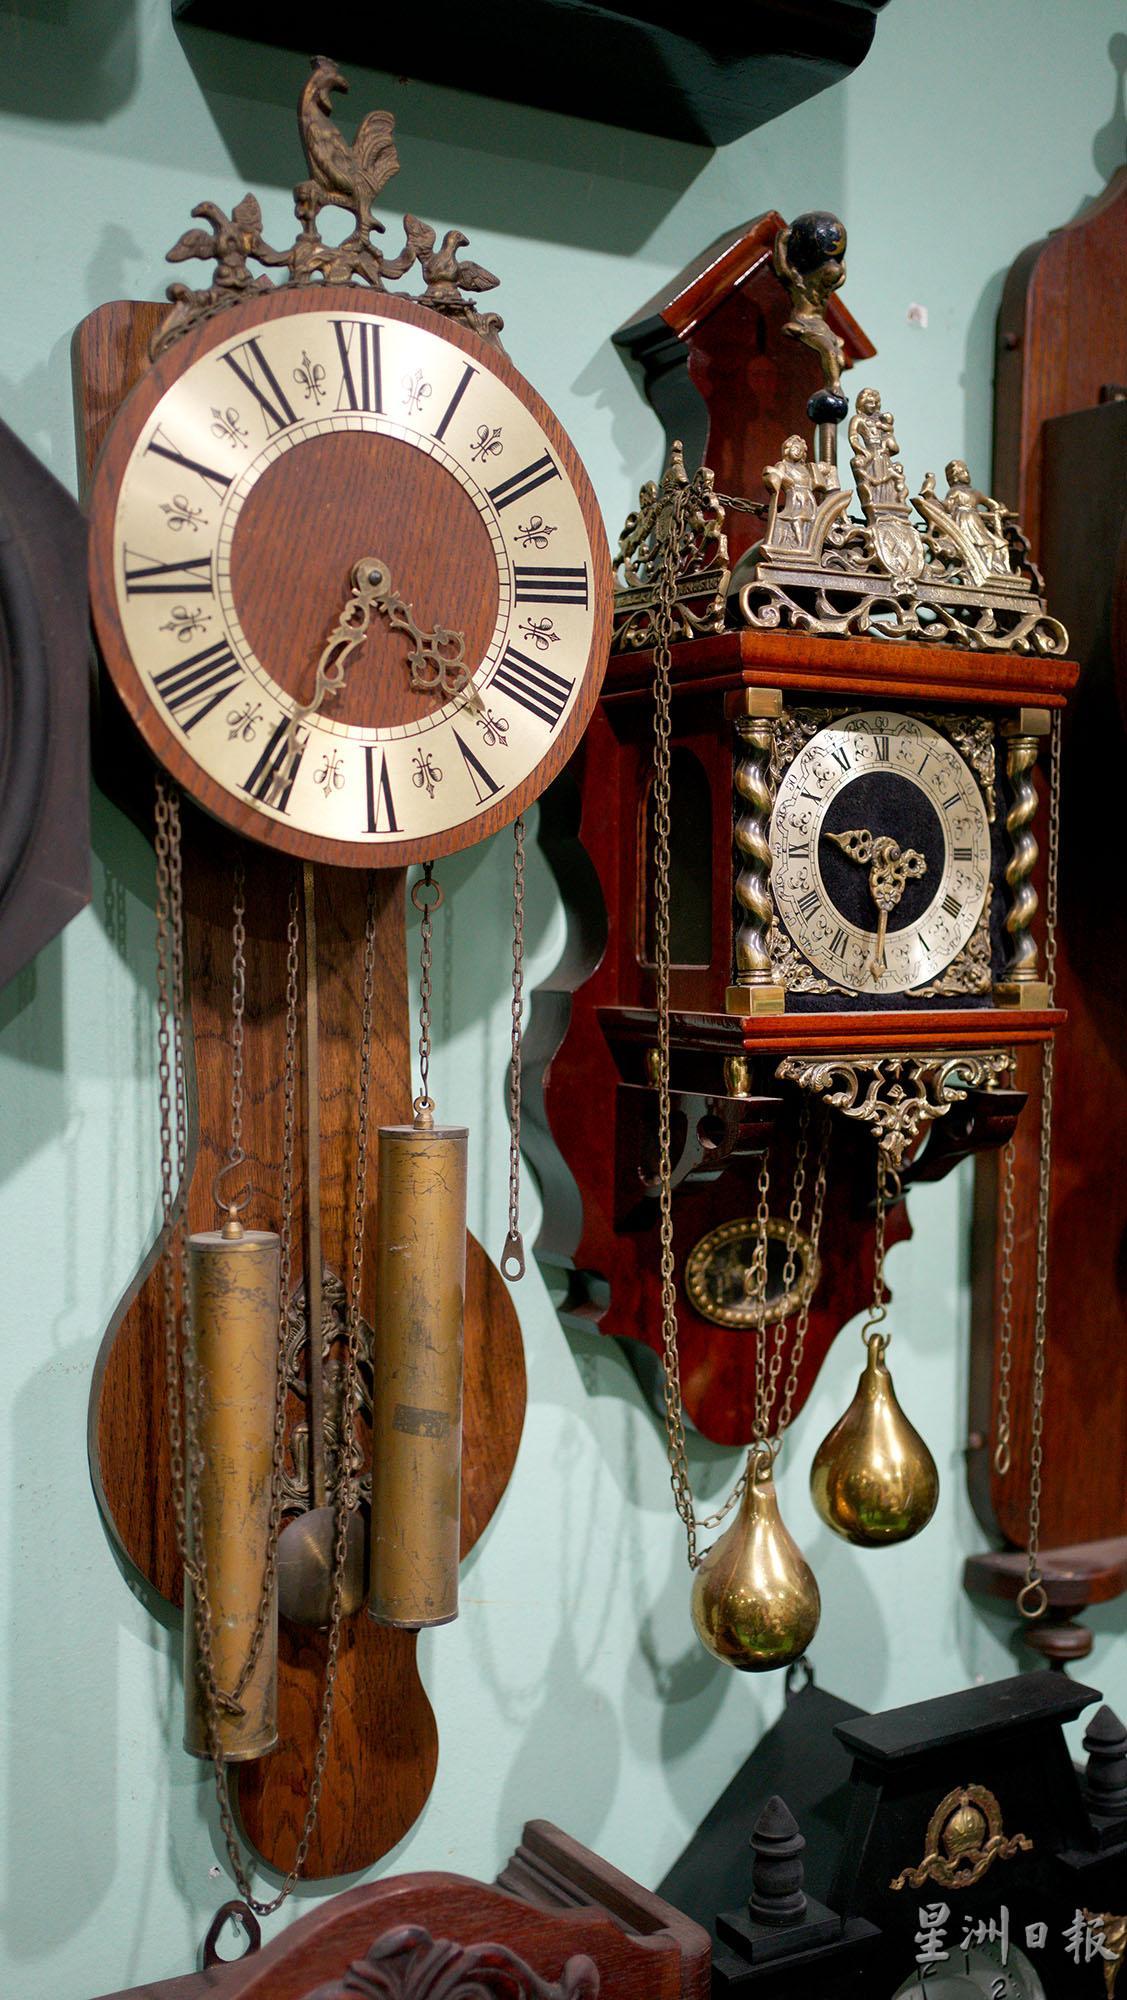 来自荷兰的西洋钟，有著独有的文化底蕴及艺术价值。

